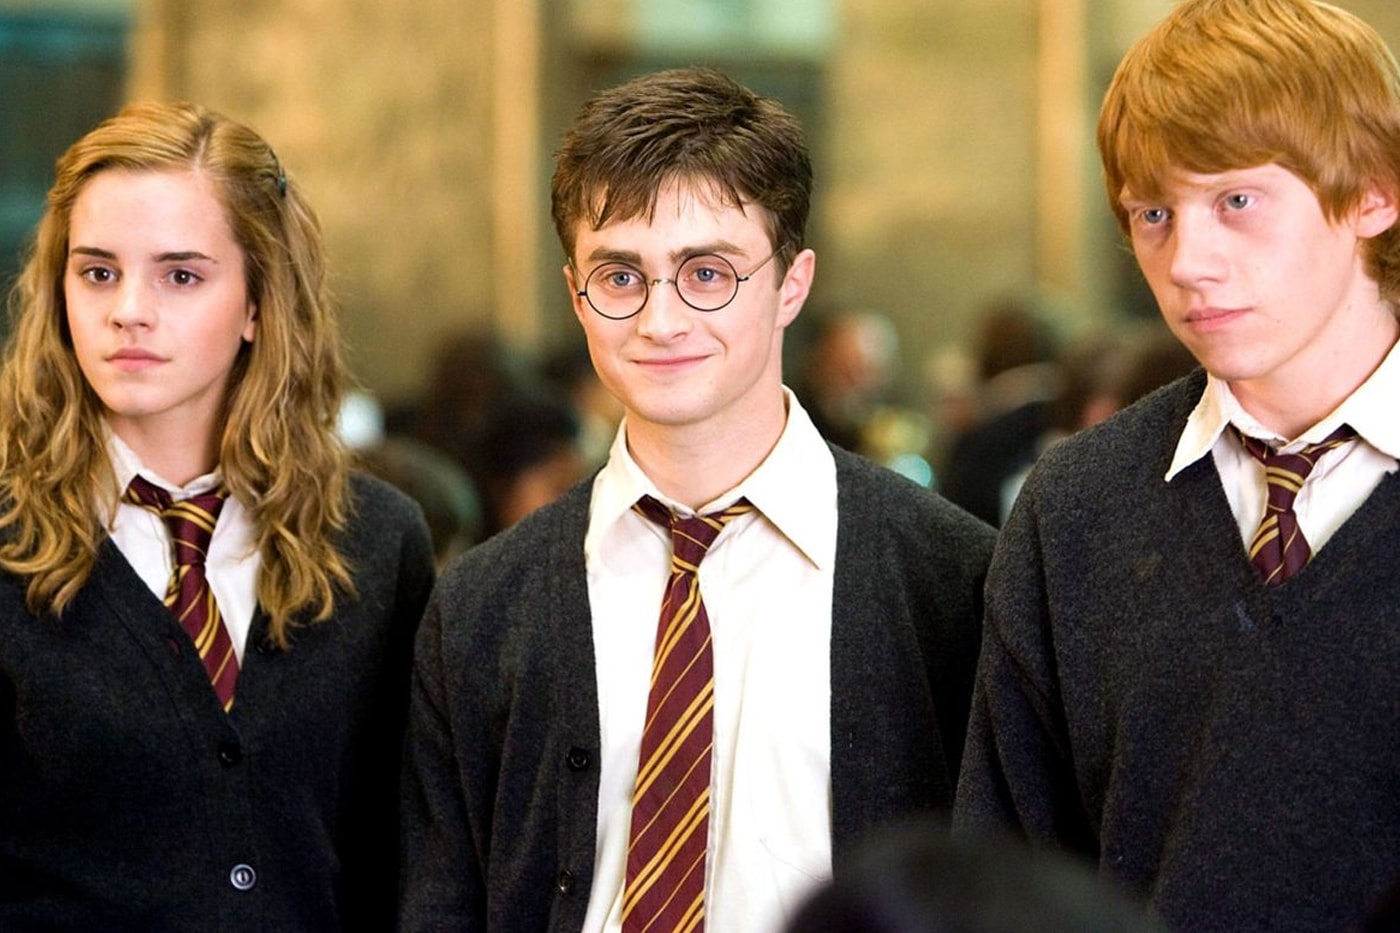 『ハリー・ポッター』の新ドラマシリーズが正式に発表 'Harry Potter' Series Adaptation Officially Confirmed at HBO Max daniel radcliffe rupert grint emma watson jk rowling